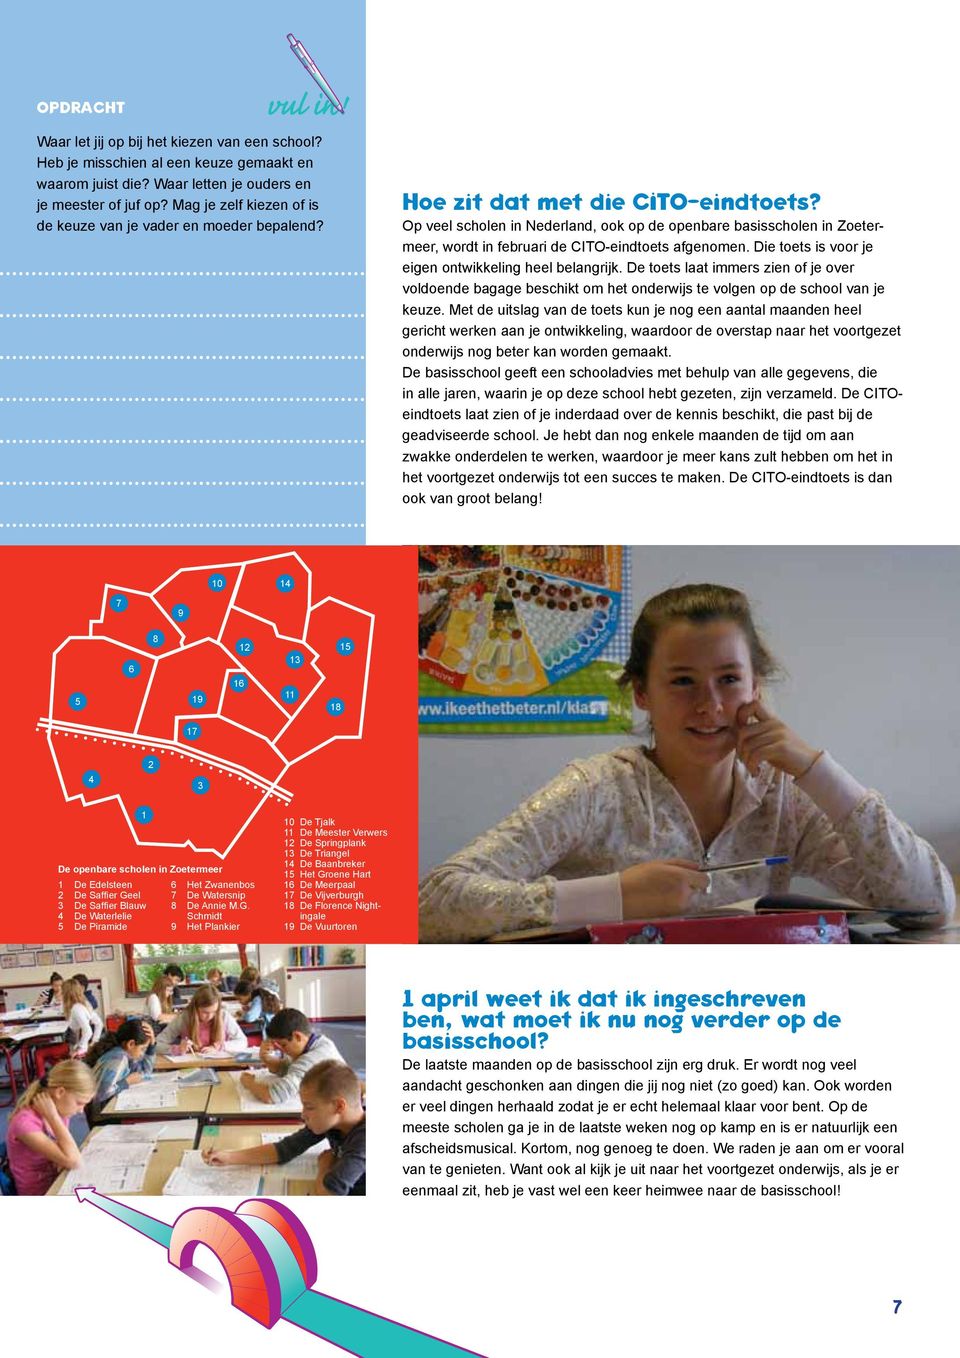 Op veel scholen in Nederland, ook op de openbare basisscholen in Zoetermeer, wordt in februari de cito-eindtoets afgenomen. Die toets is voor je eigen ontwikkeling heel belangrijk.